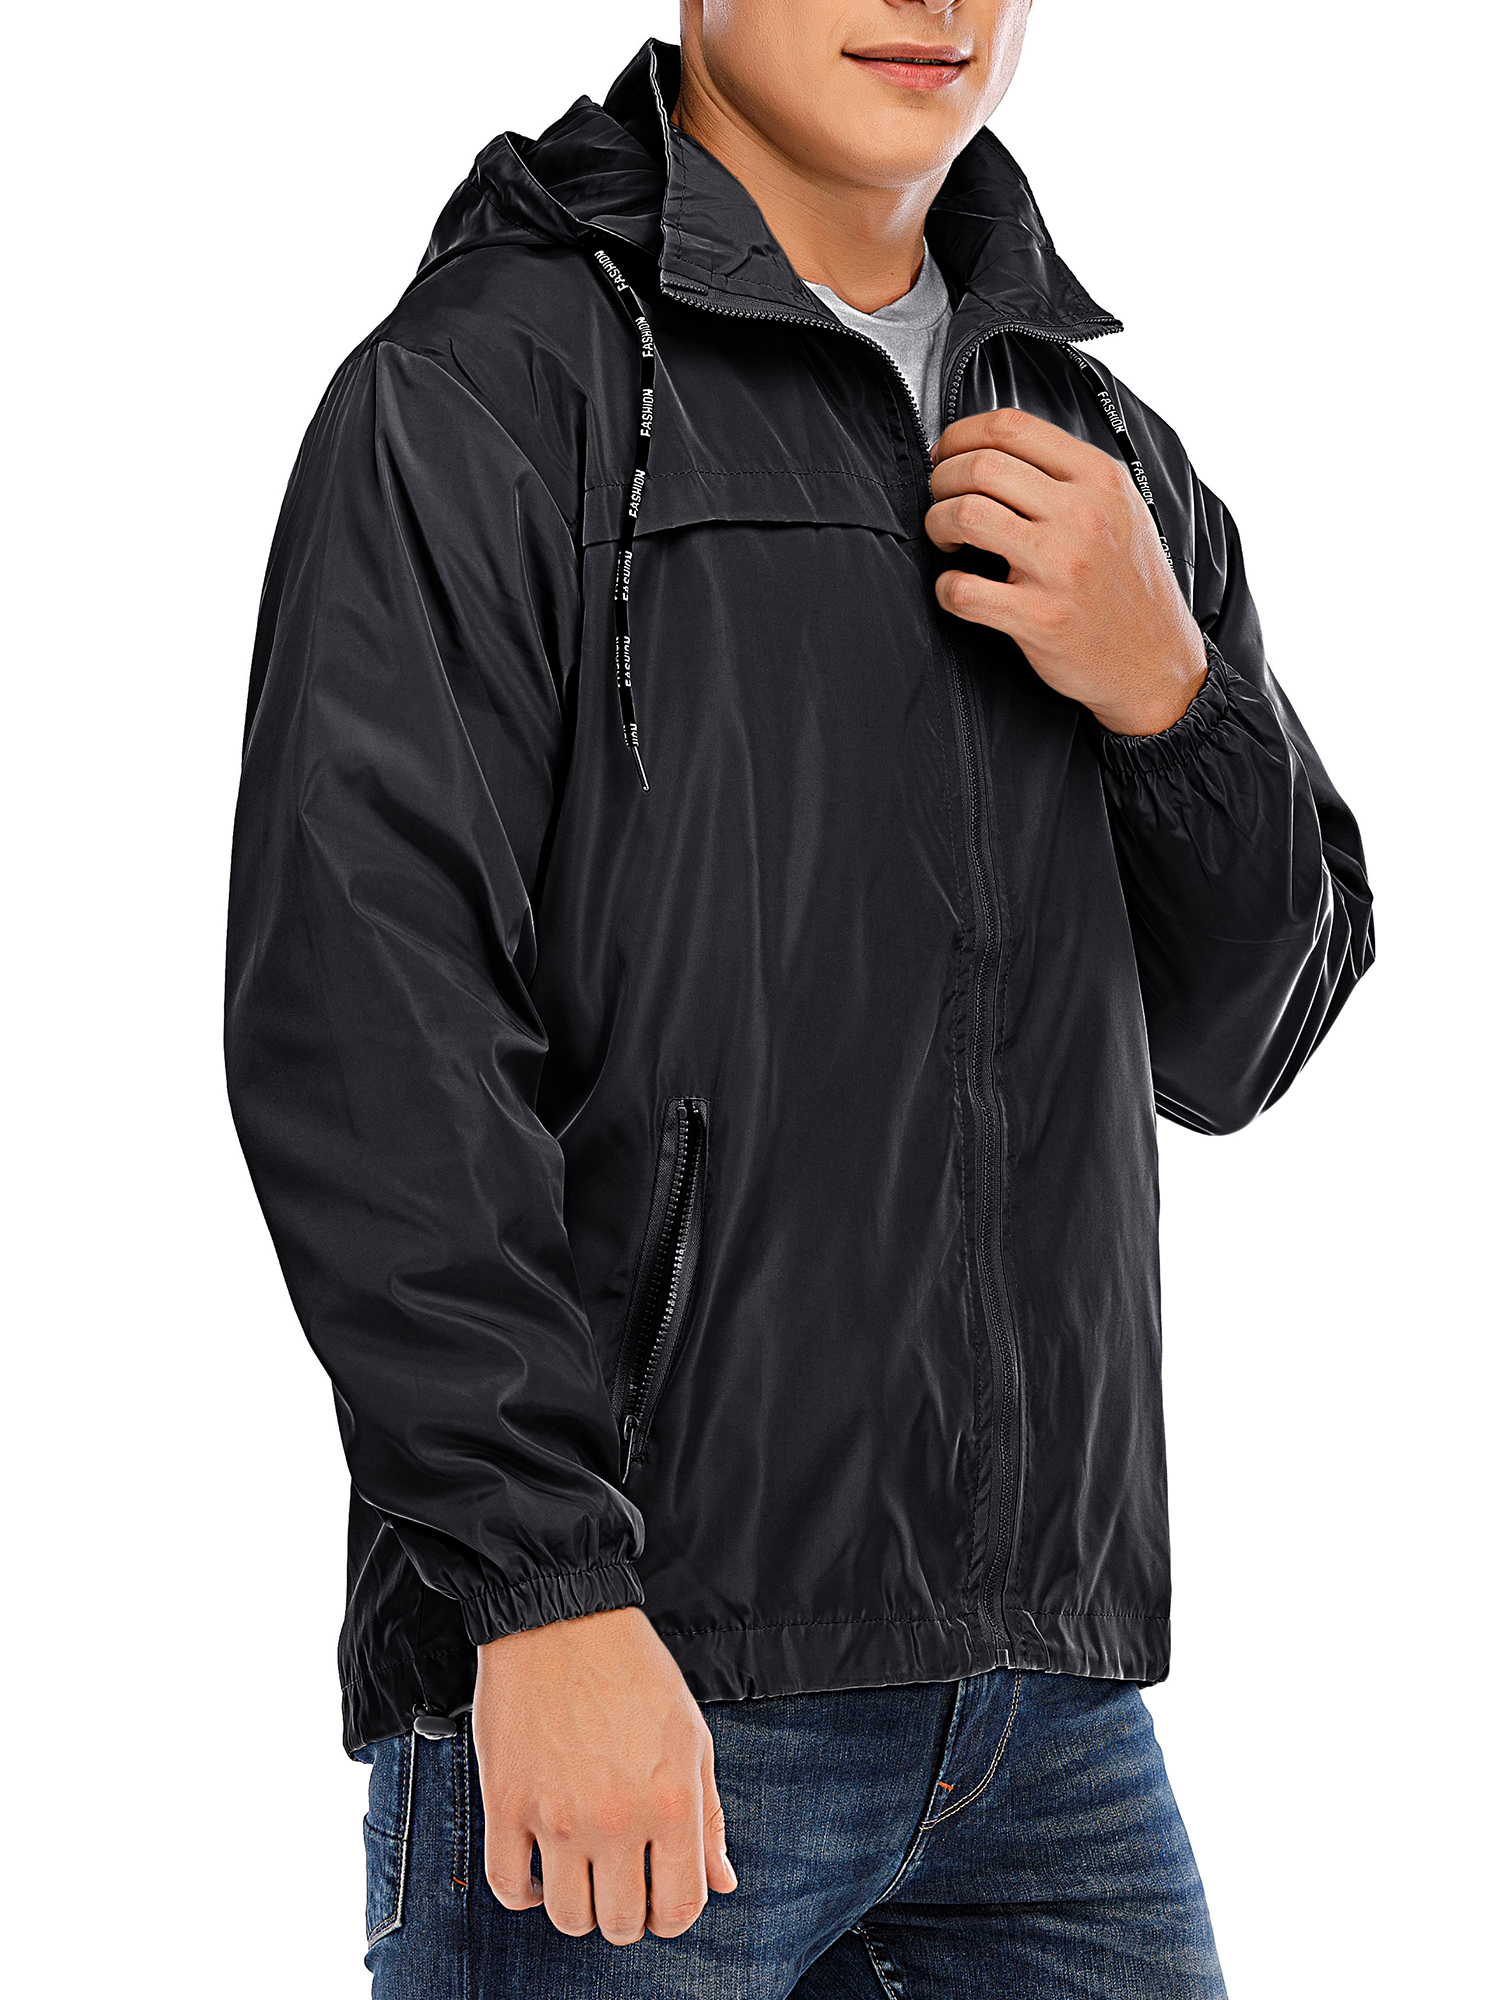 FOCUSSEXY Mens Windbreaker Jacket Coat with Hood, Hooded Waterproof Windbreaker Rain Jacket Outwear Male Outwear Zip-Up Sport Windbreaker Winter Coat Hoodies Jacket for Men - image 2 of 7